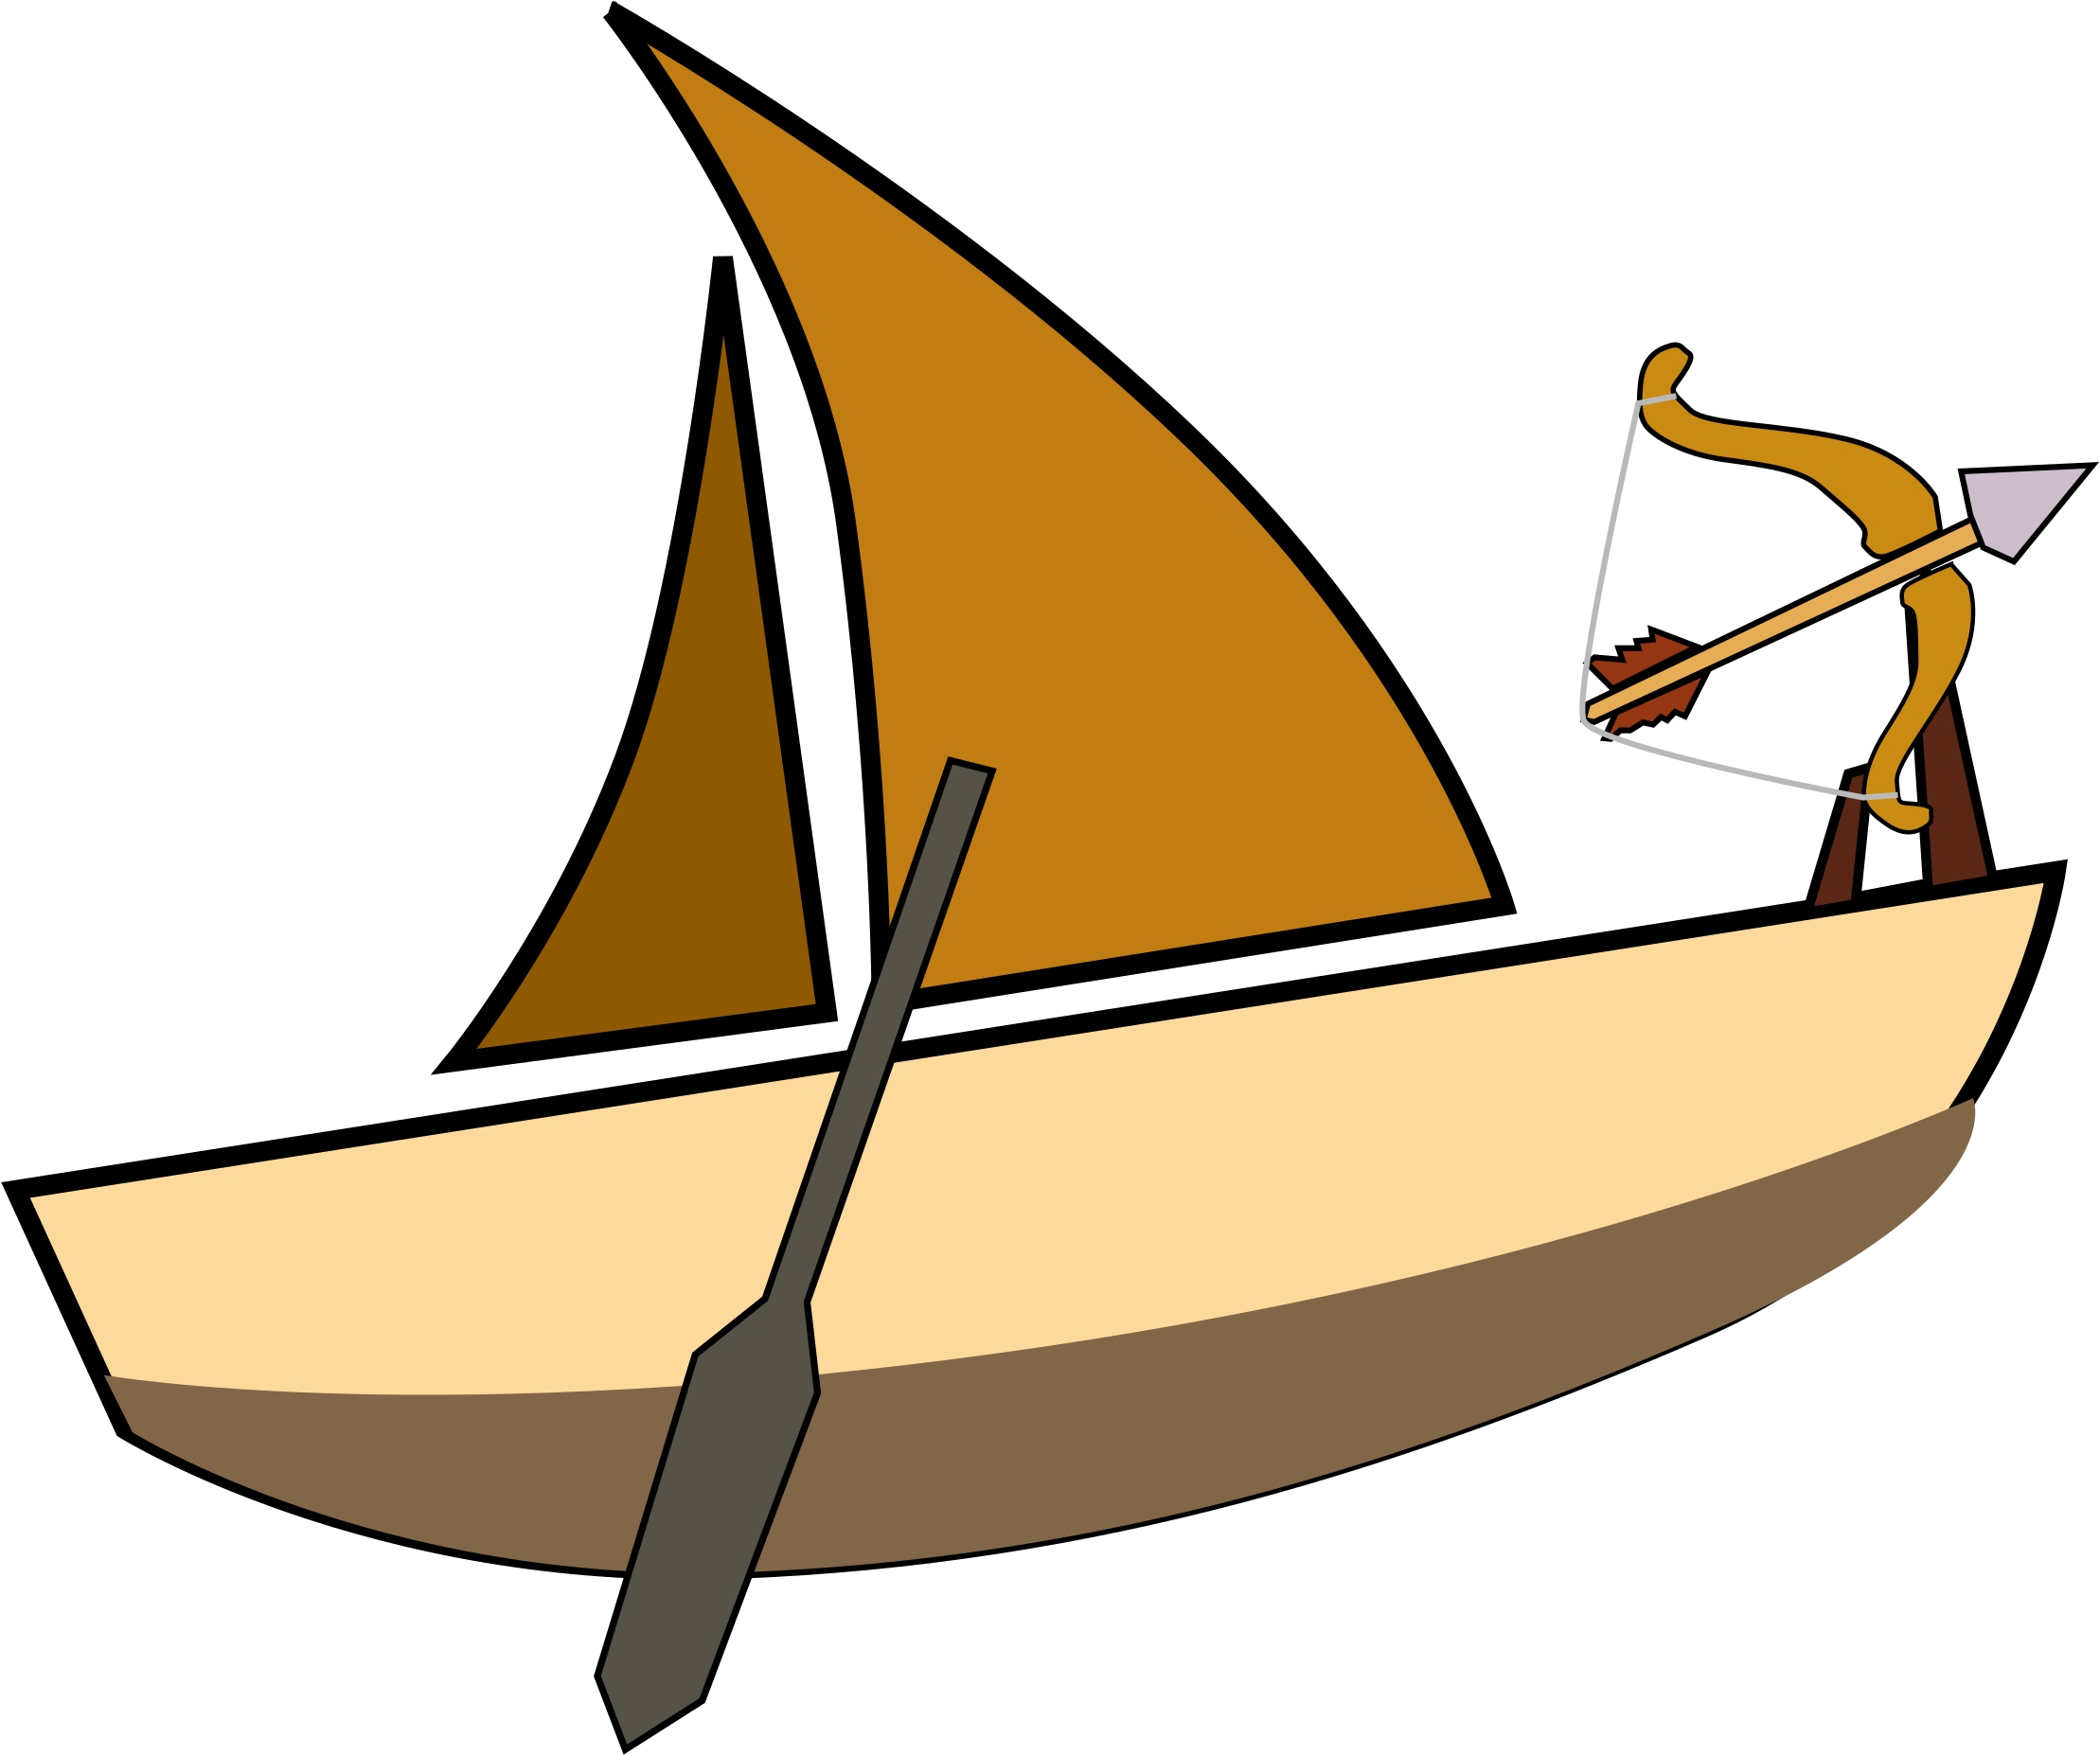 Паруса весел лодочки растения. Лодка с веслами. Лодка с парусом и веслами. Лодка с веслами парусная. Лодка на прозрачном фоне.